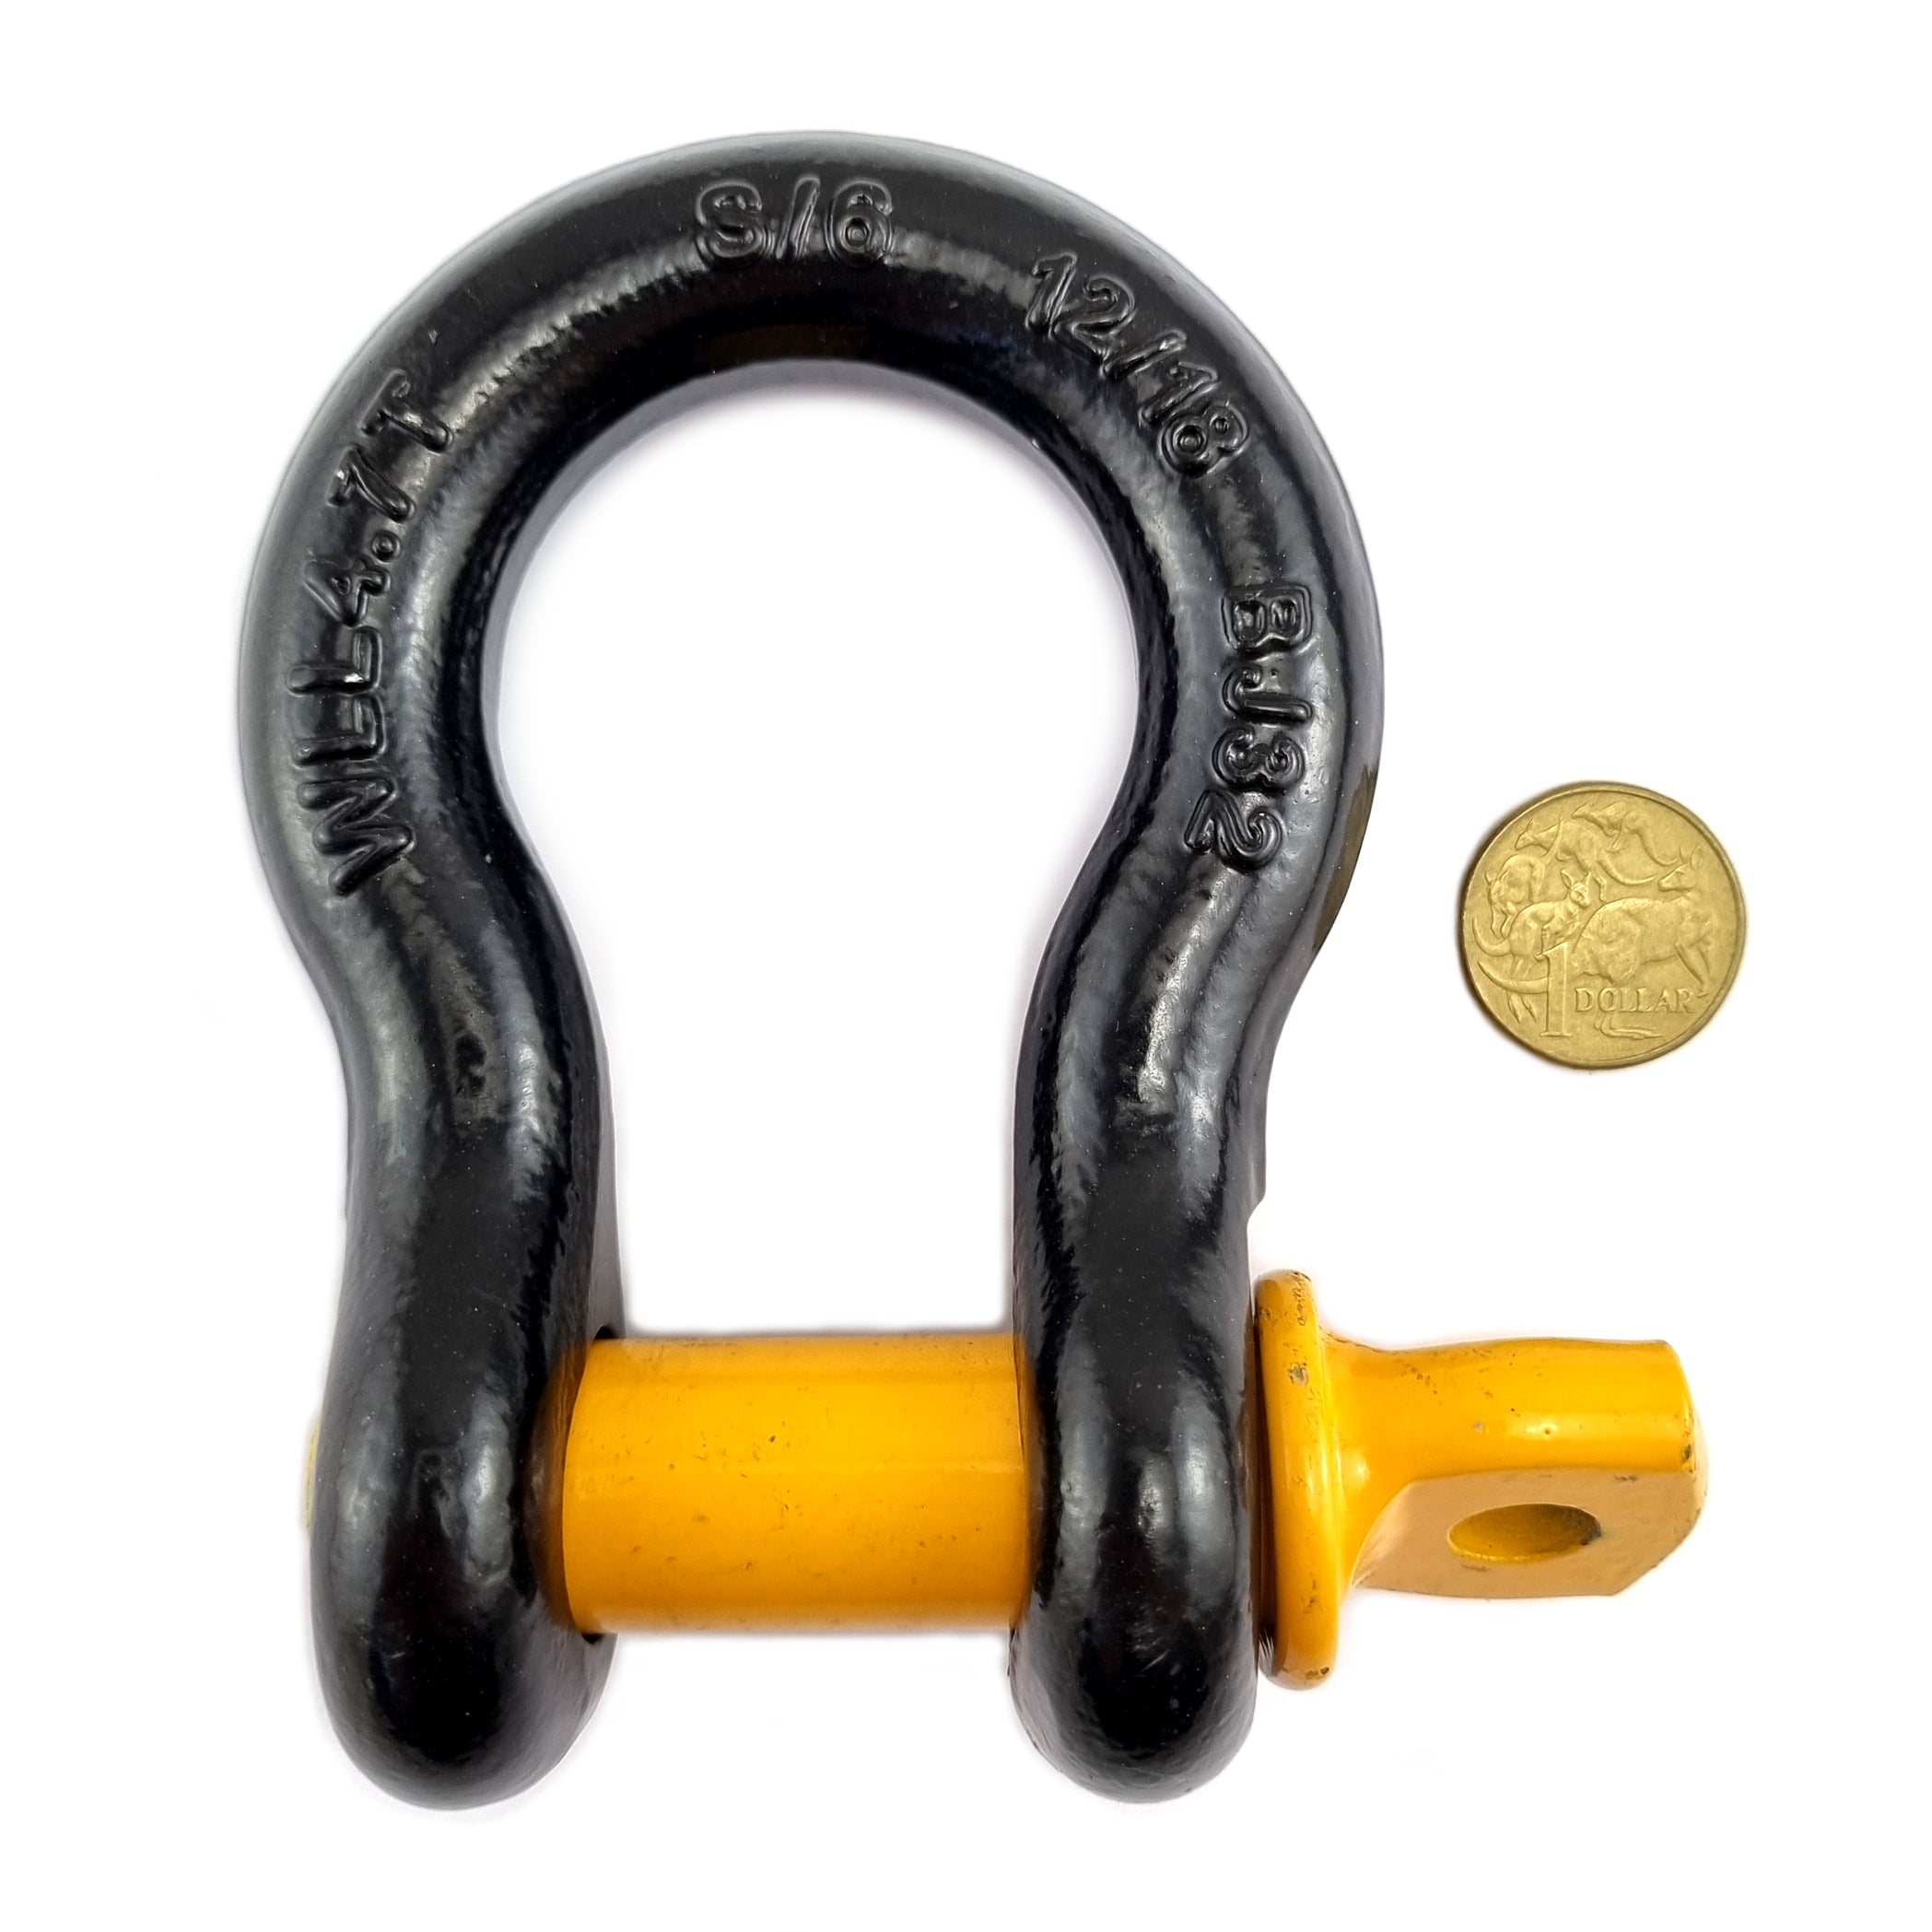 4.7 Tonne black bow shackle, grade S, complies with AS 2741. Shop hardware online chain.com.au